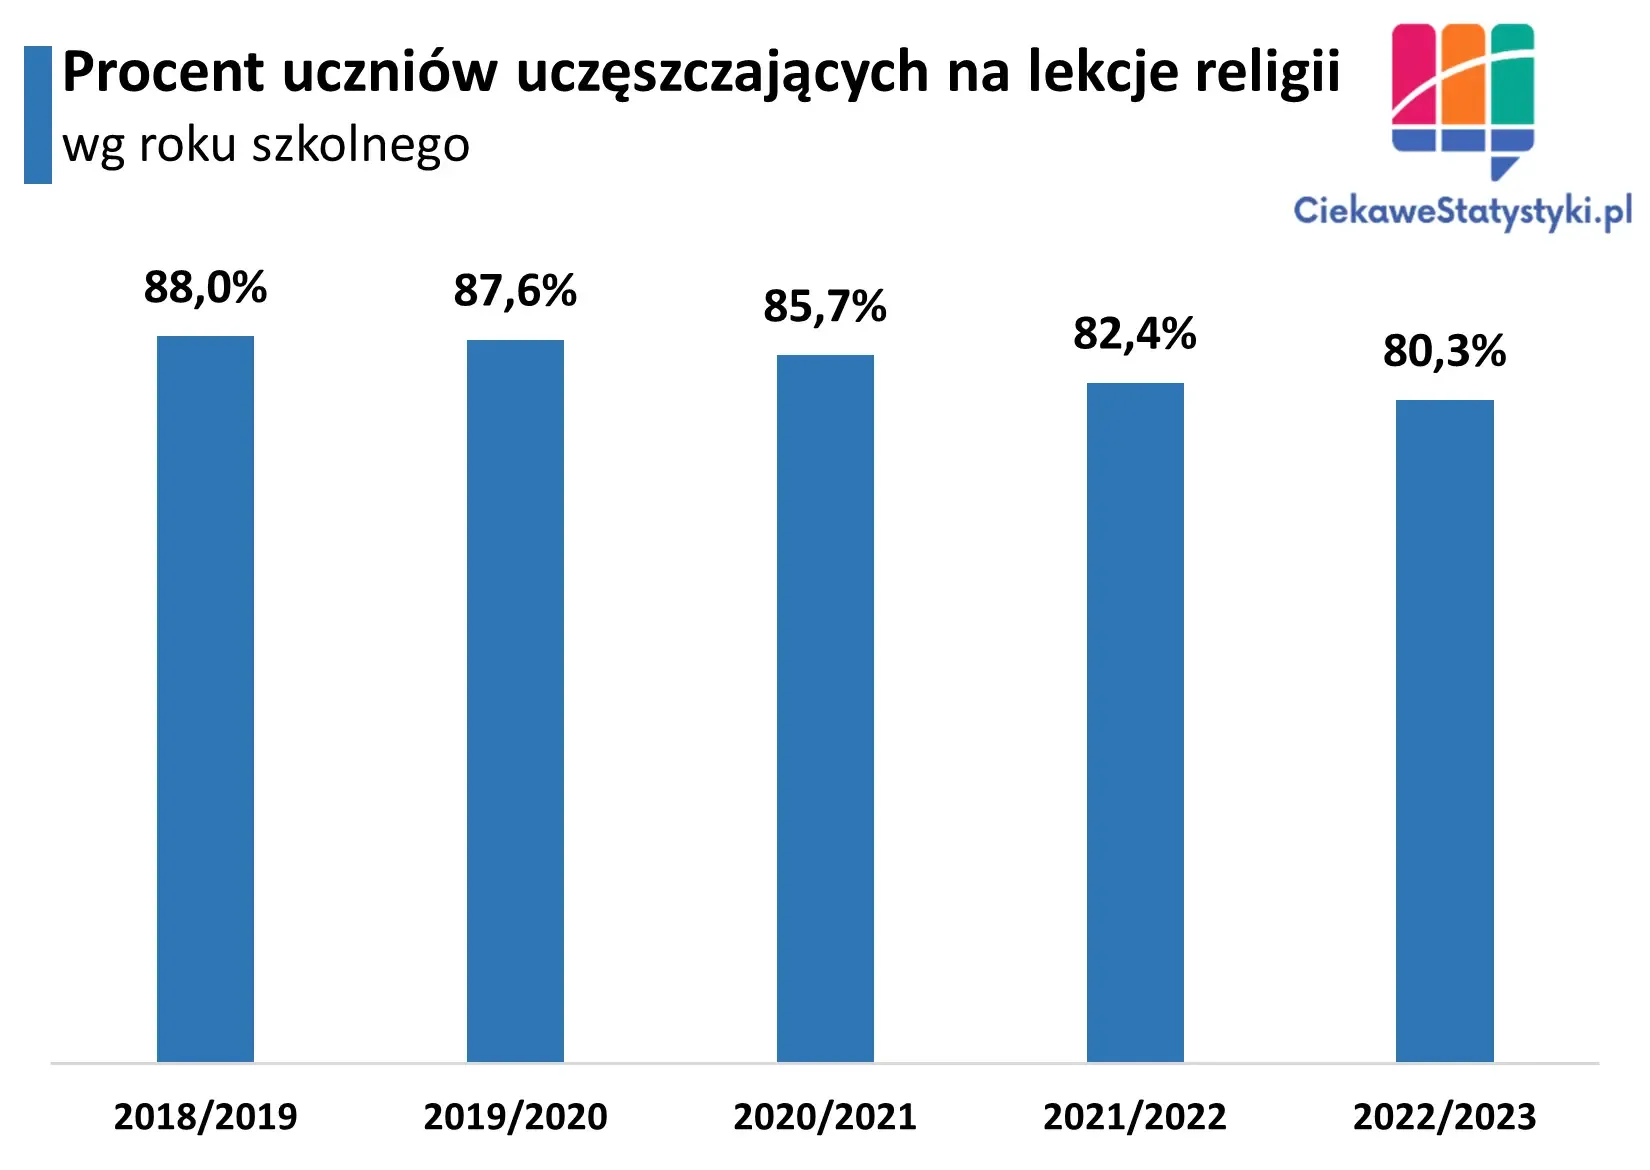 Wykres pokazuje odsetek uczniów w Polsce chodzących na lekcje religii na przestrzeni lat